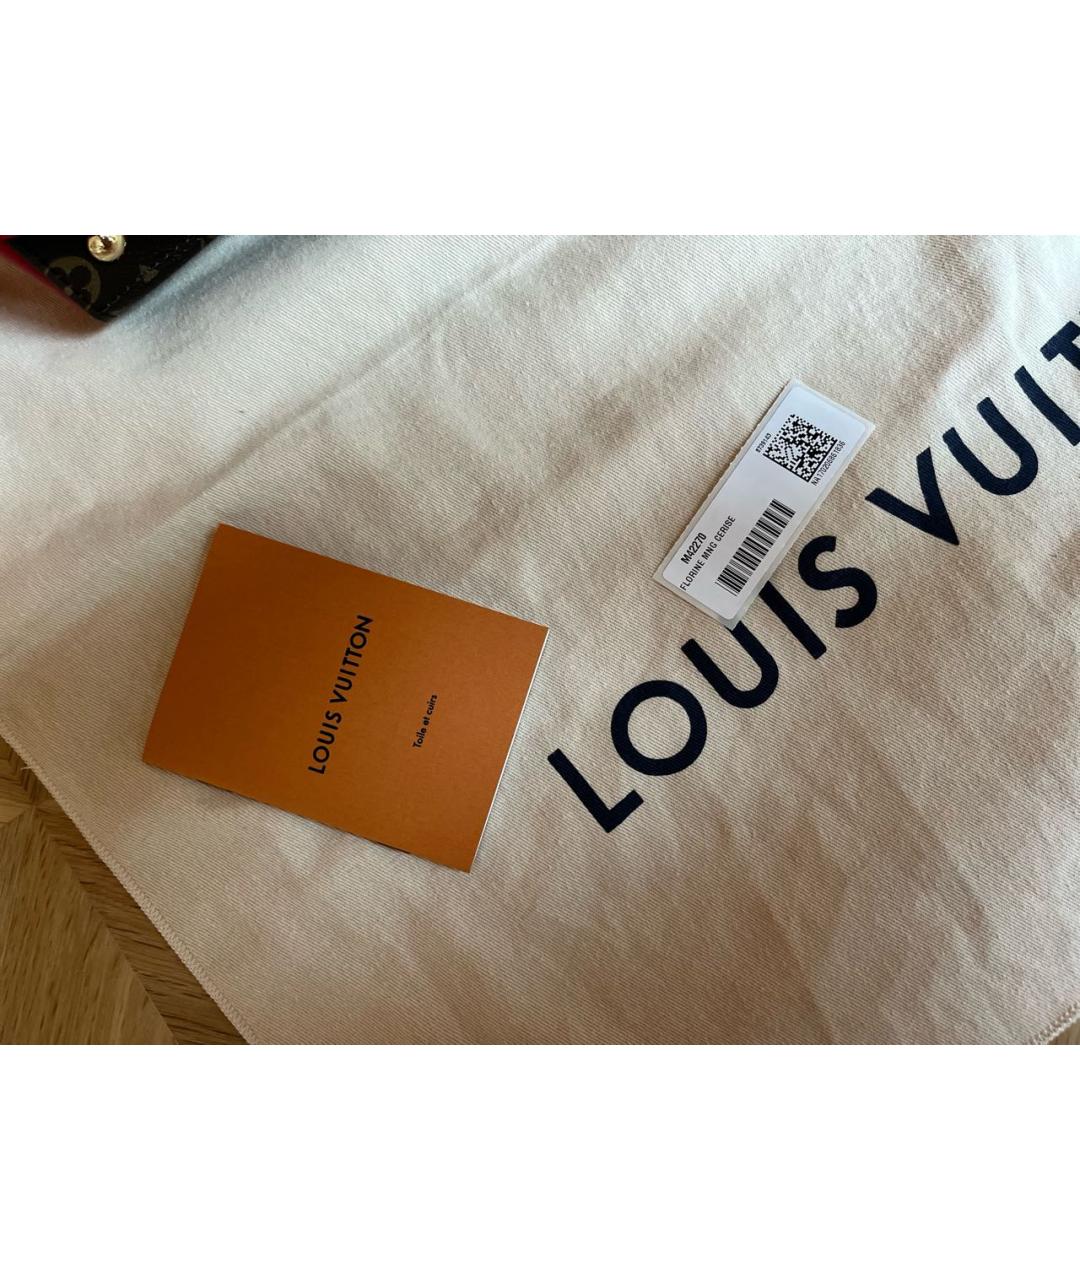 Louis Vuitton, Bags, Louis Vuitton Florine Mng Cerise